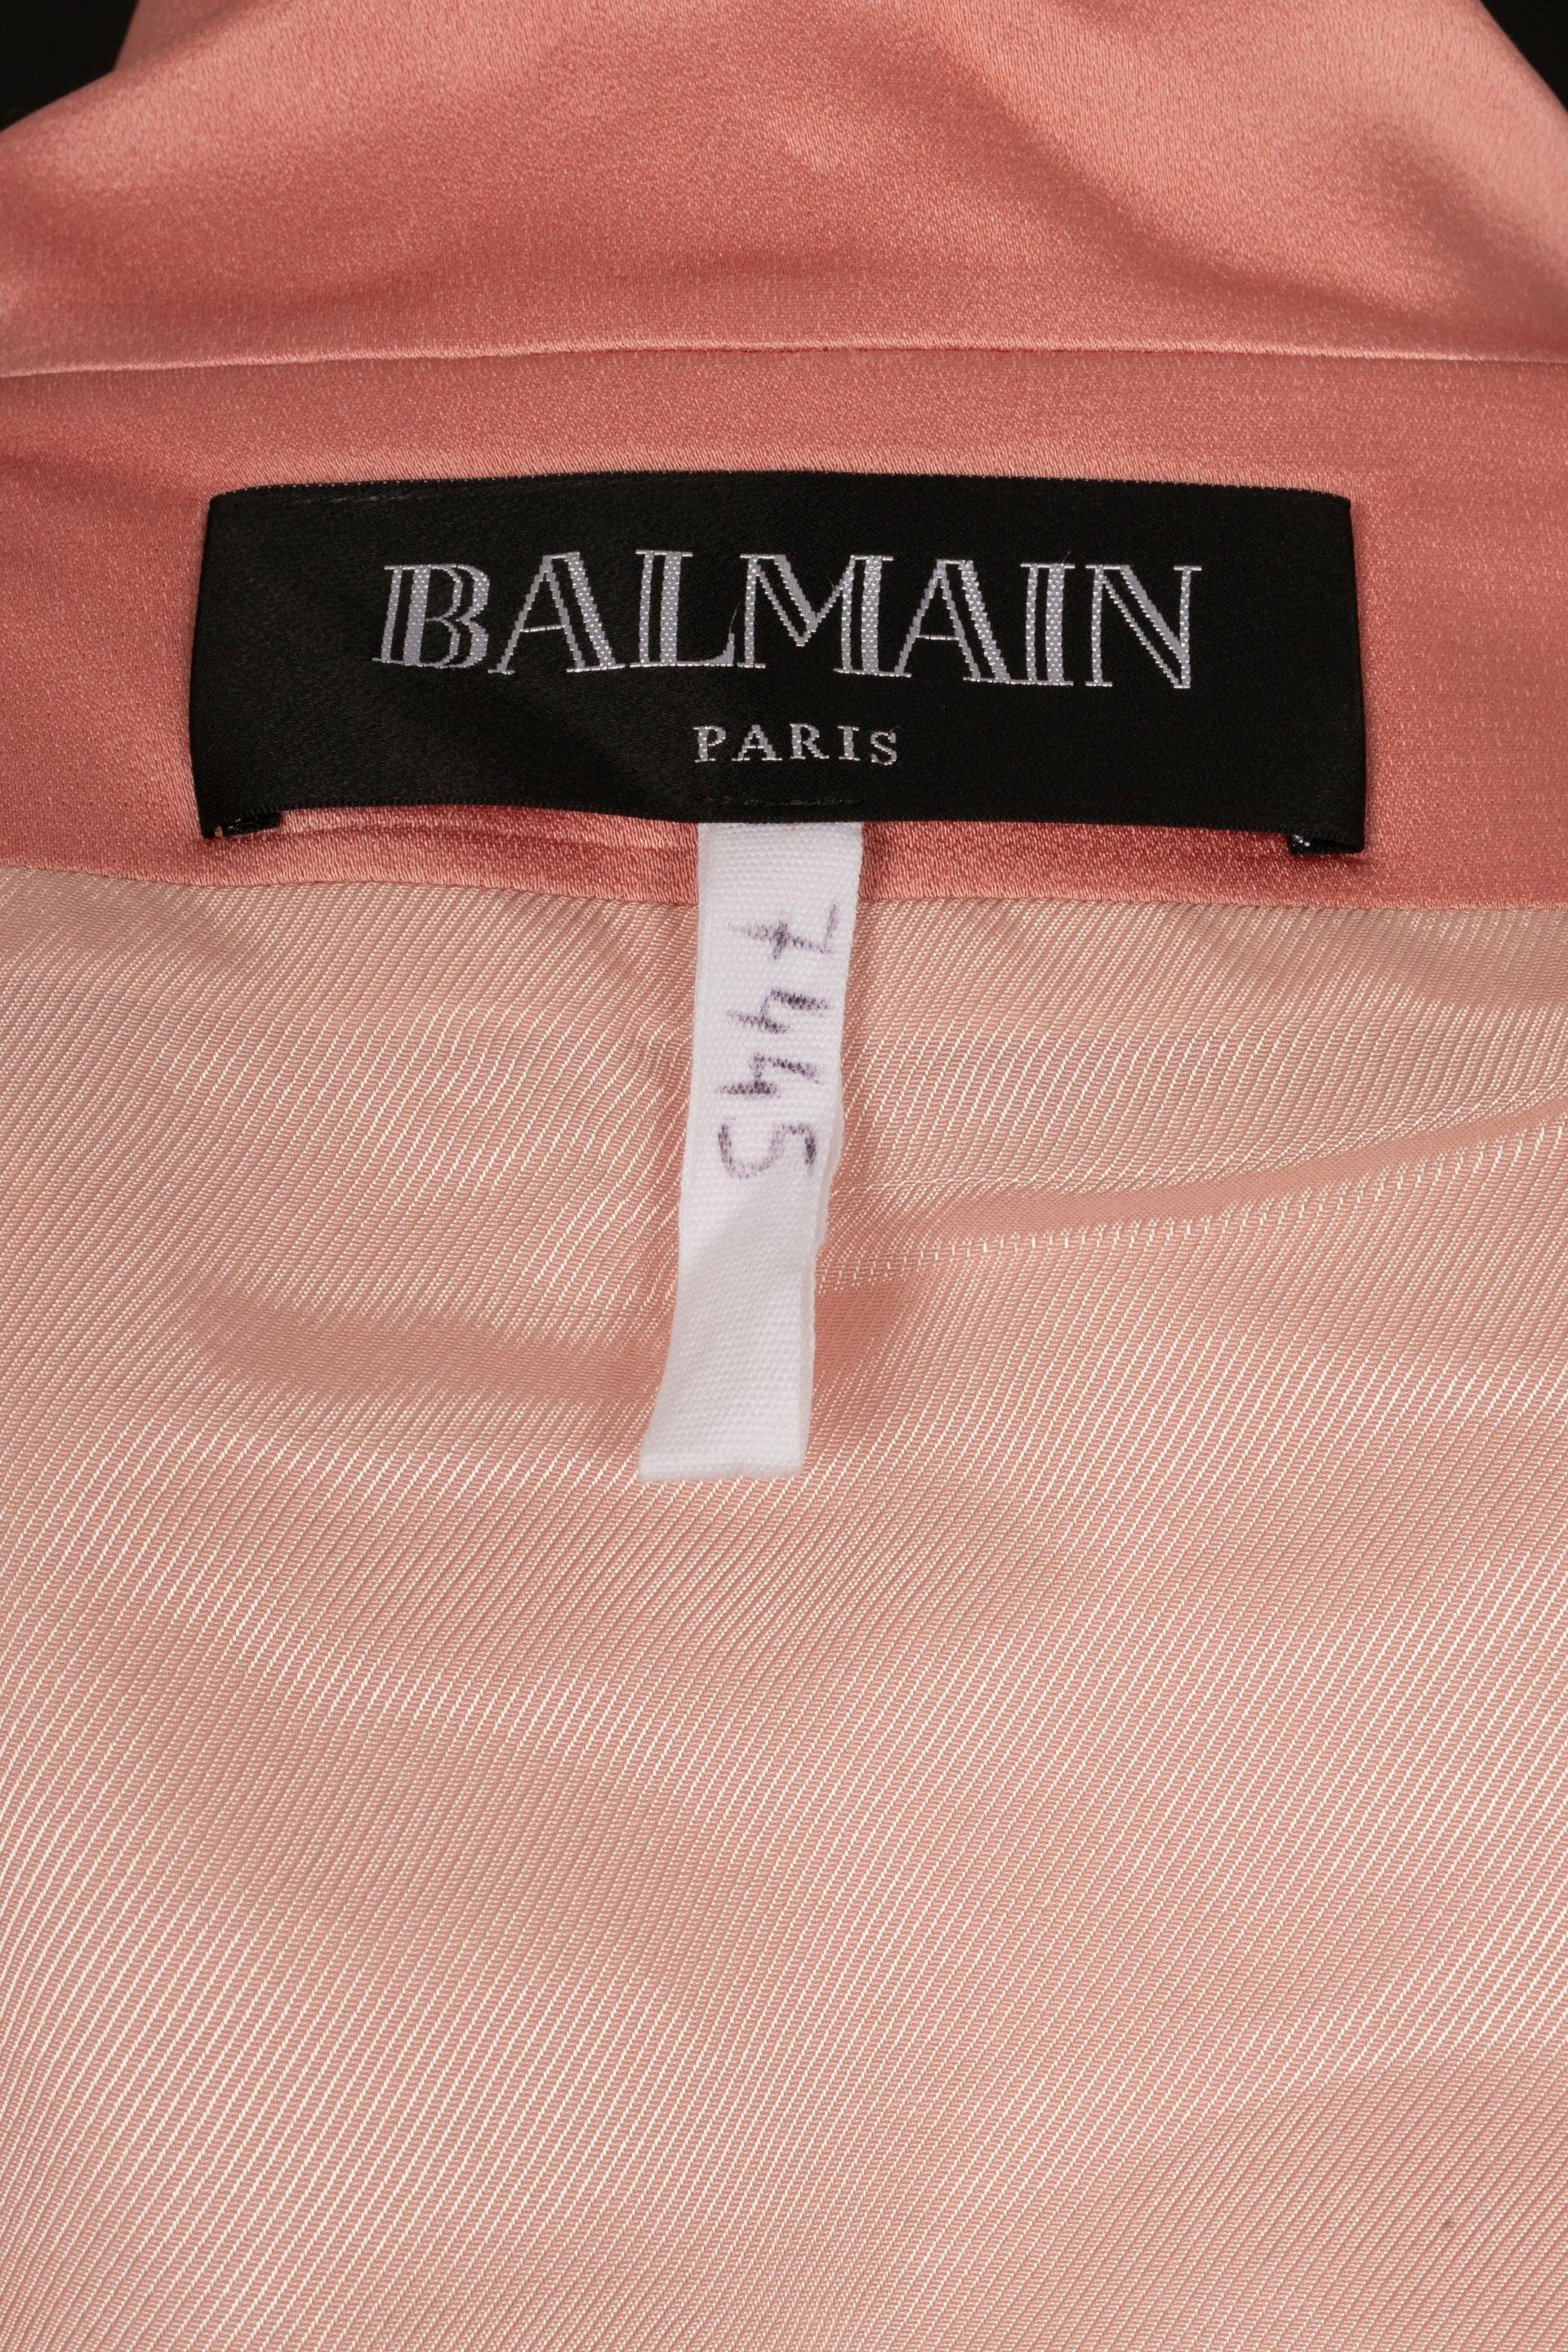 Balmain Pink Long Cardigan from a Défilé For Sale 3